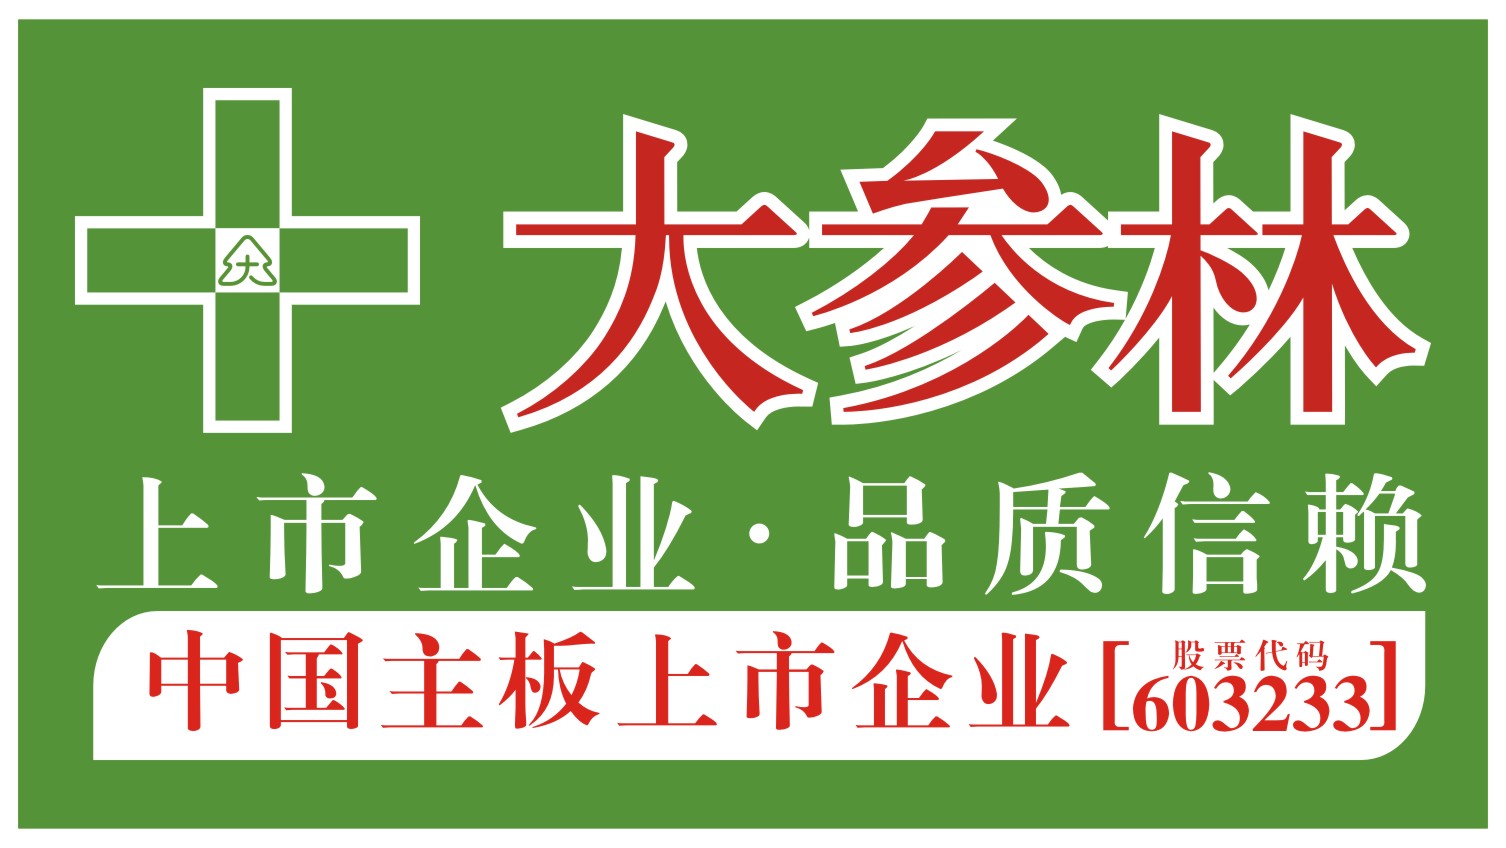 大参林大药房logo图片